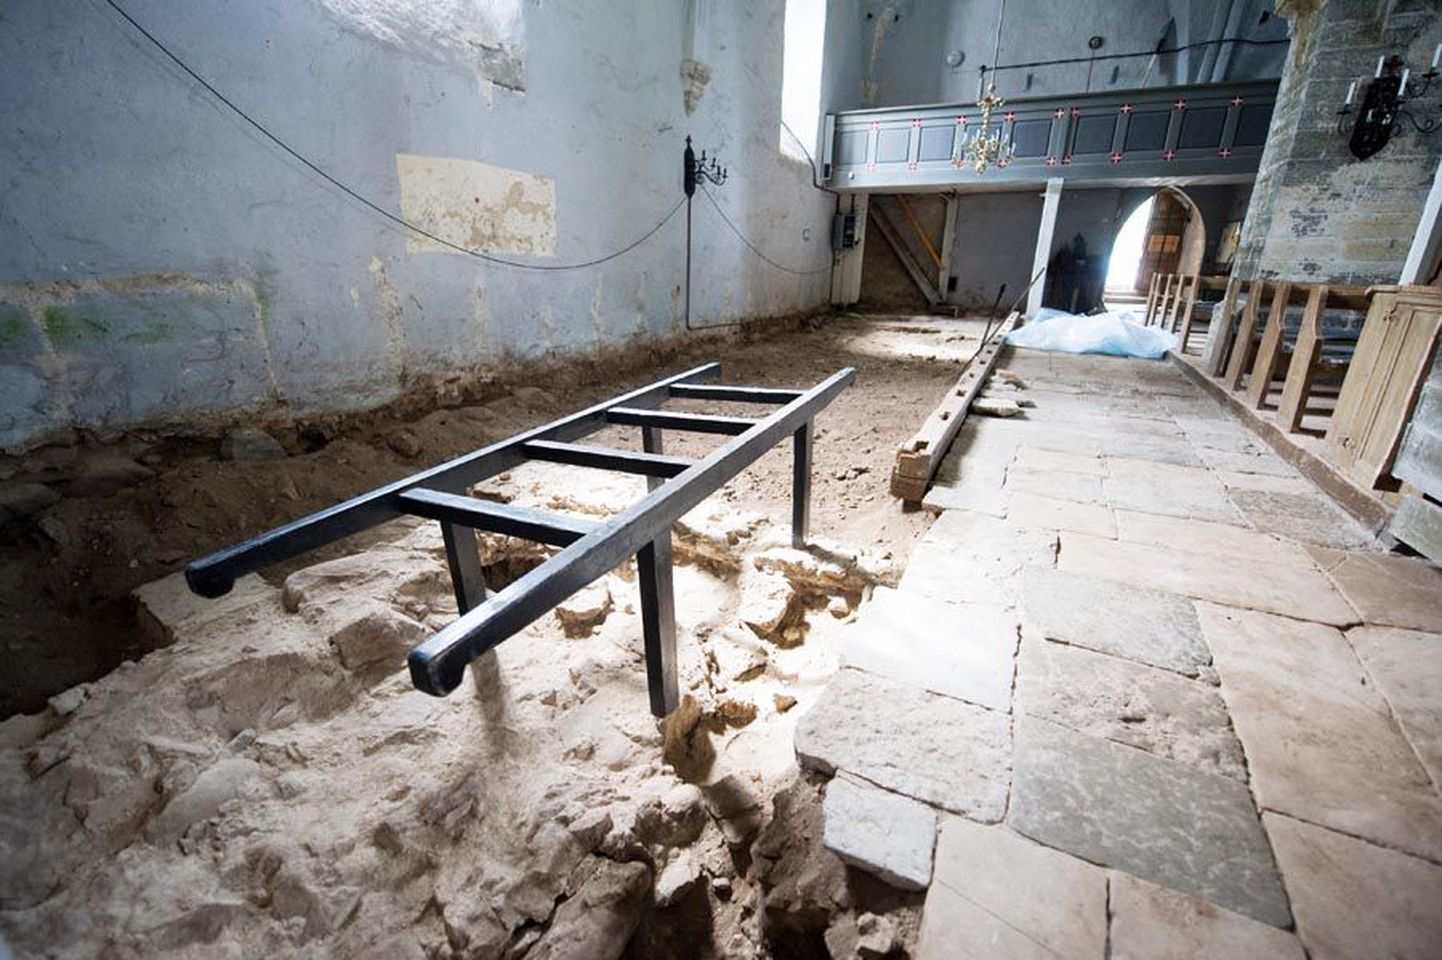 Lääne-Harjumaal Risti kirikus tuli paekividest laotud põranda ülesvõtmise käigus välja tuhatkond keskaegset münti. Täna hakatakse keskaegset põrandat uuesti kinni katma.